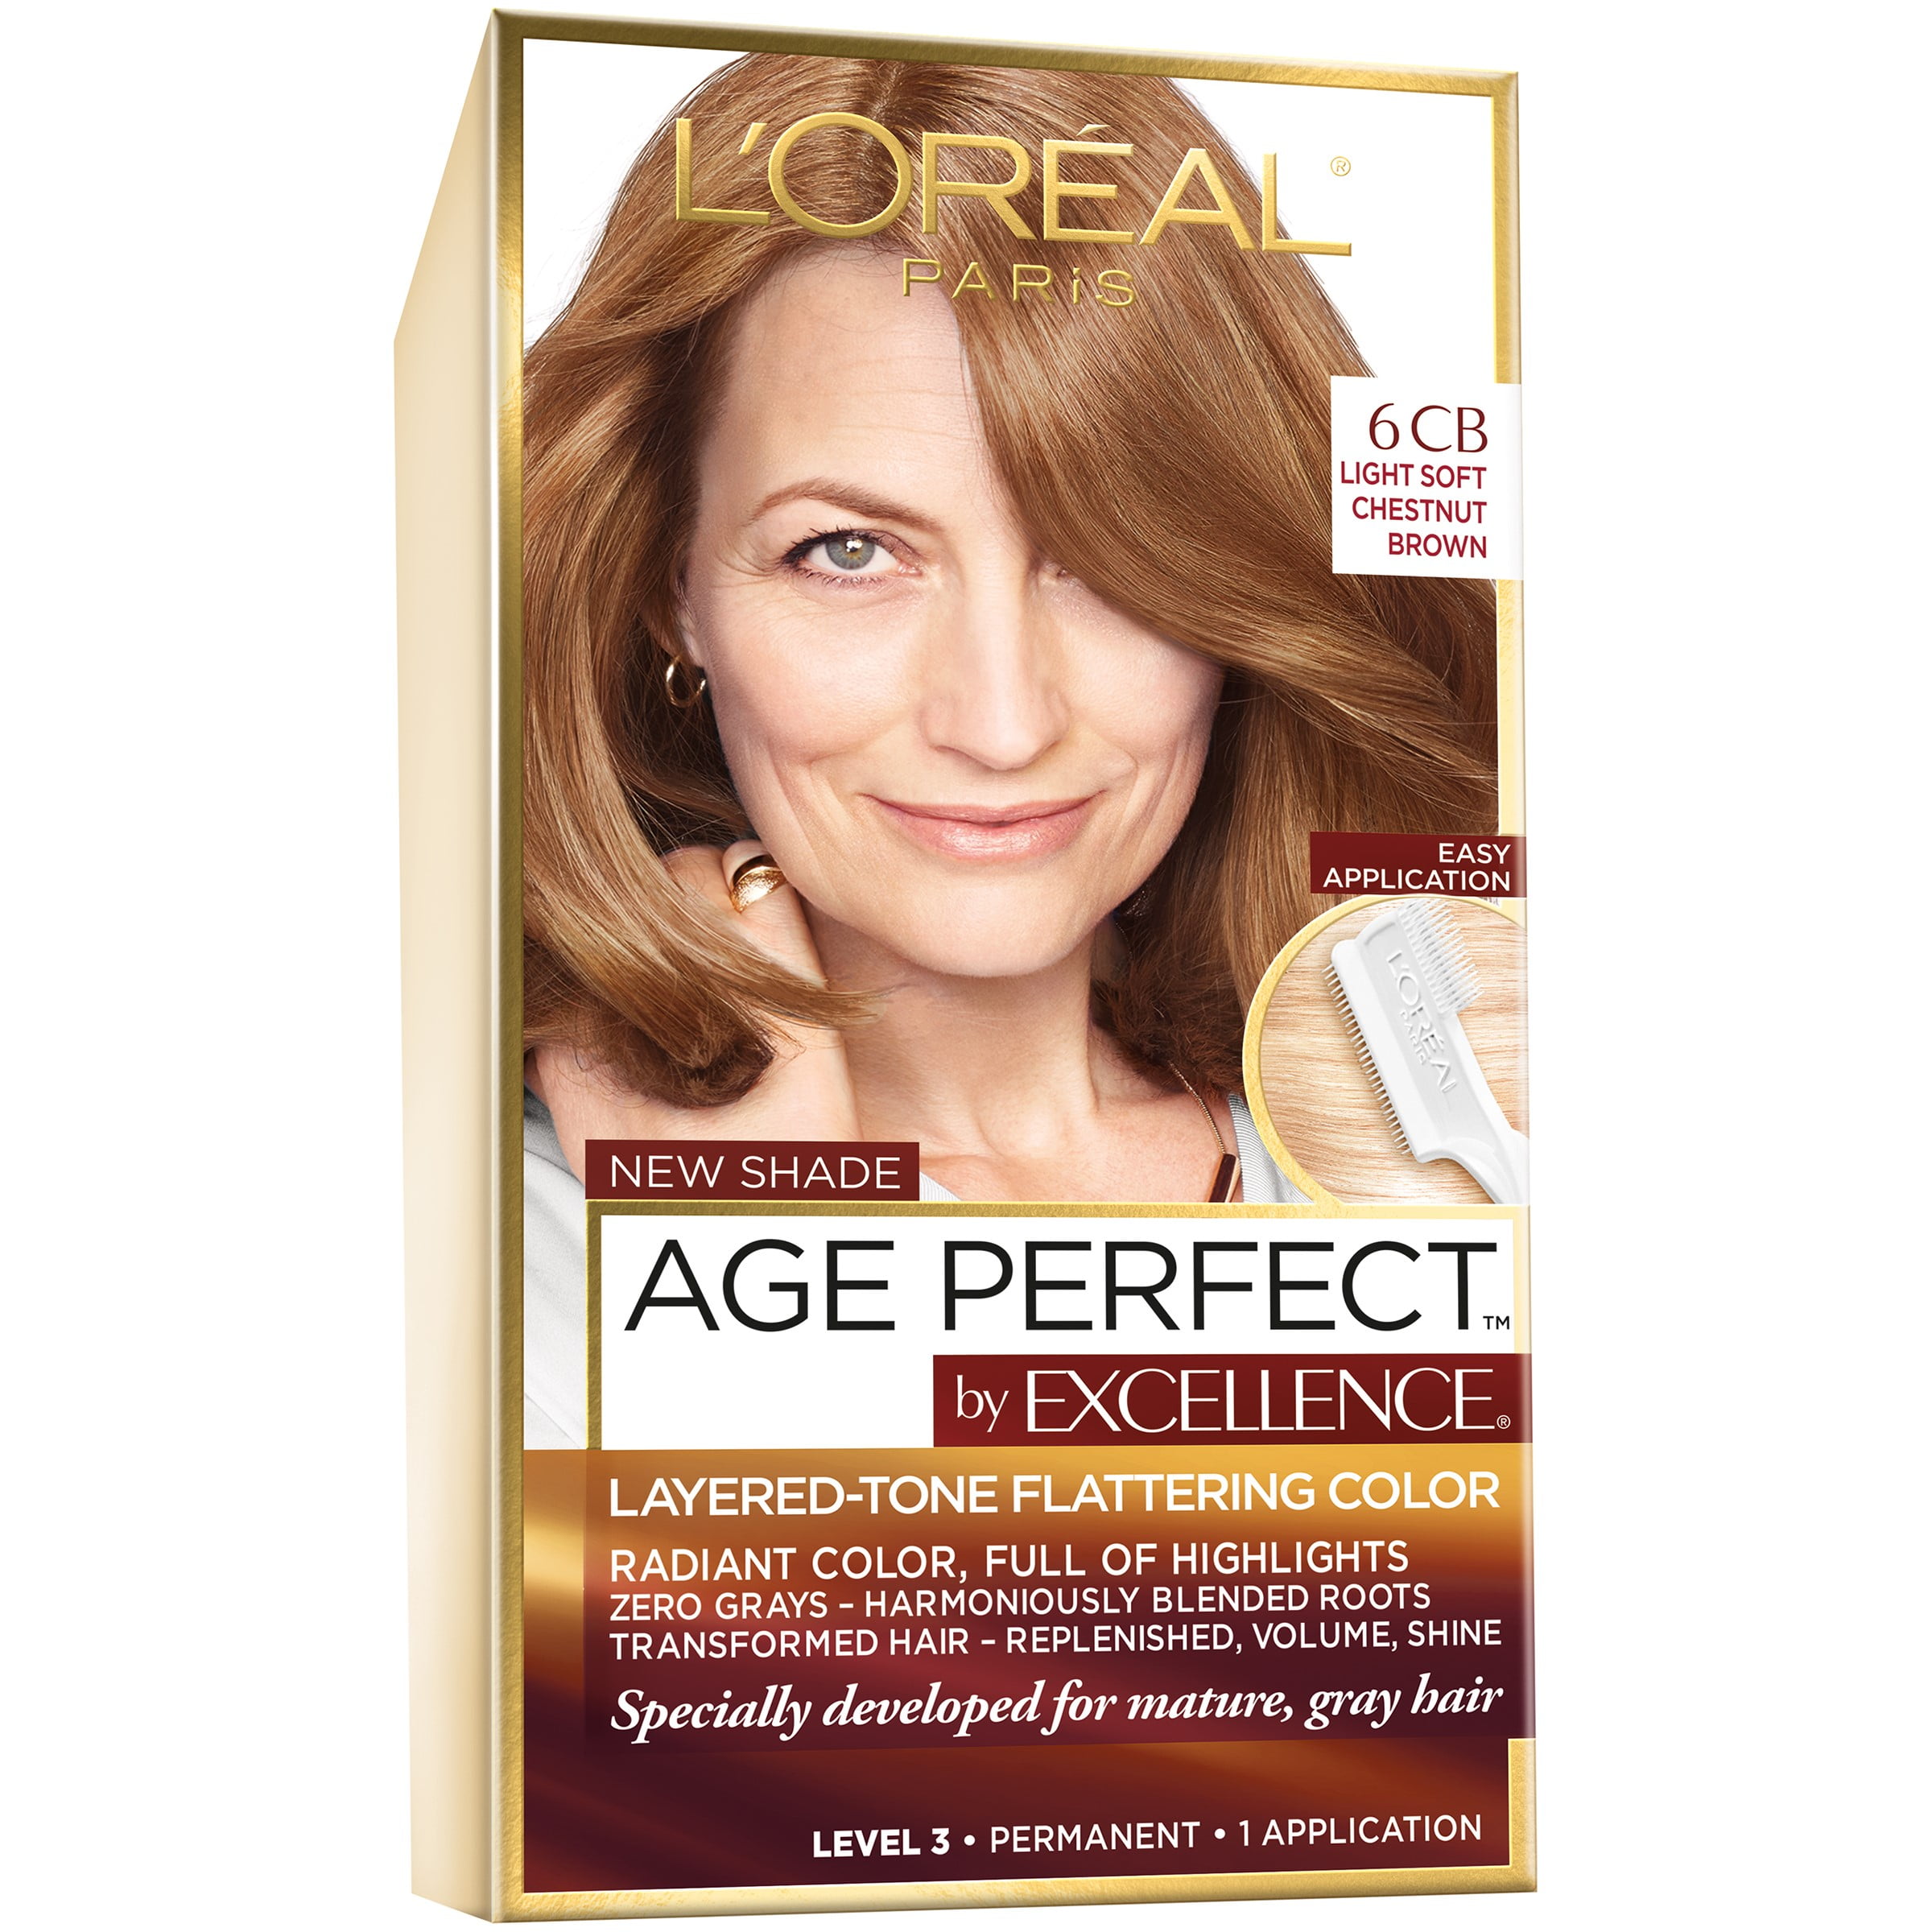 L'Oreal Paris Age Perfect Permanent Hair Color, 6CB Light Soft Chestnut  Brown, 1 Kit 